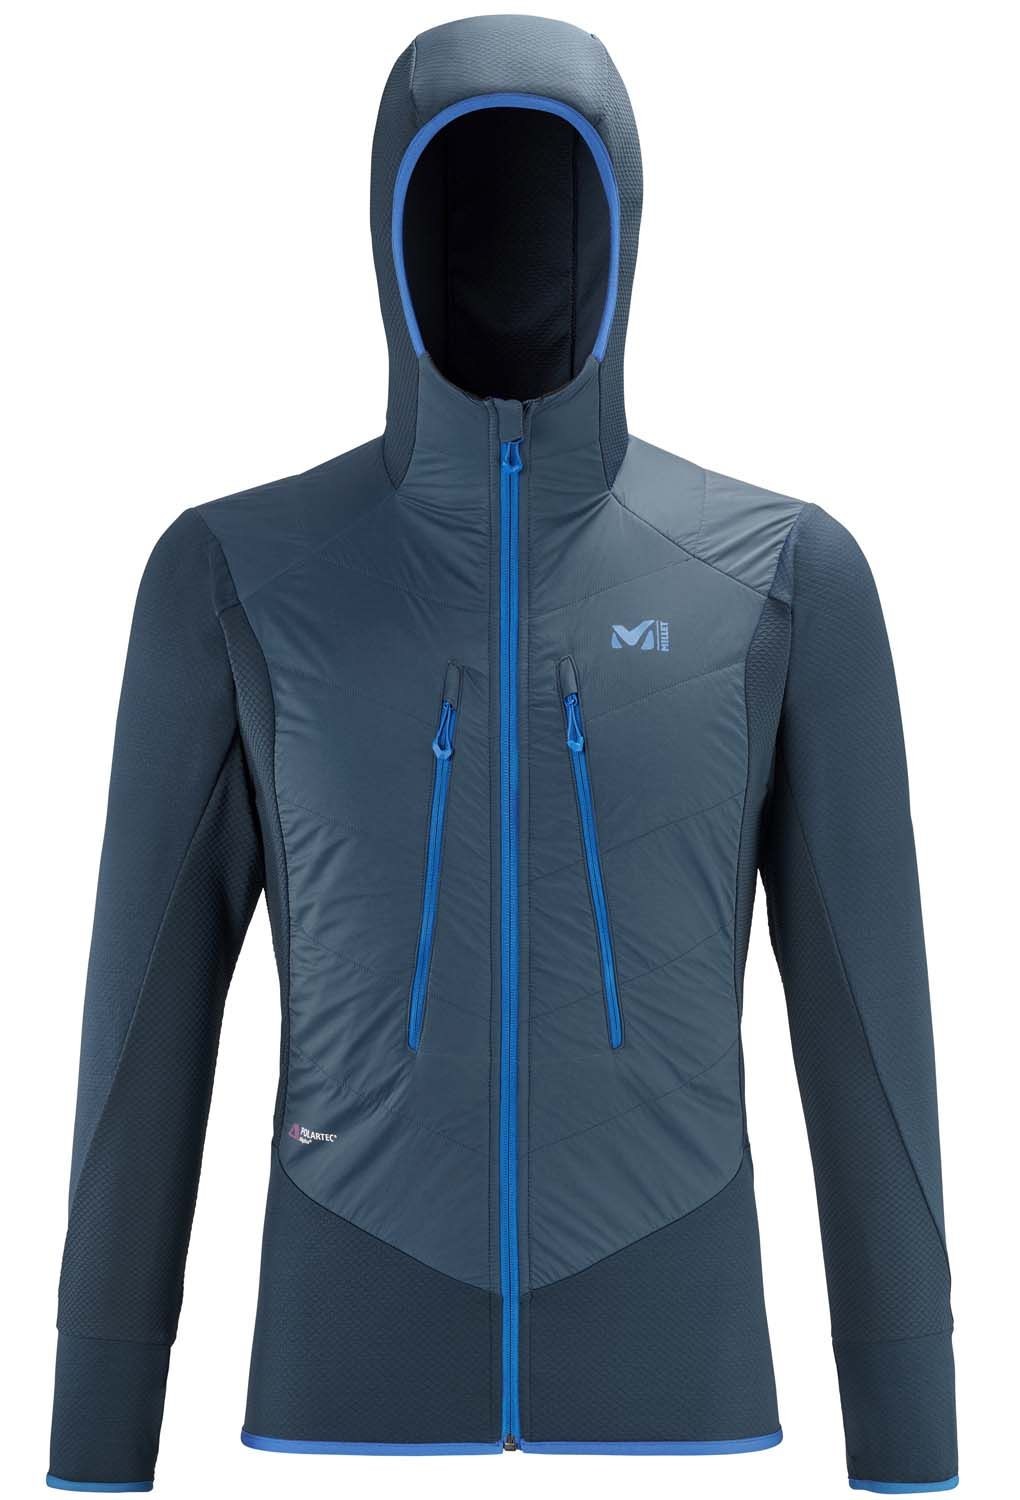 MMillet Extreme Rutor Comp, chaqueta técnica para esquí travesía intenso-de competición, de fibra